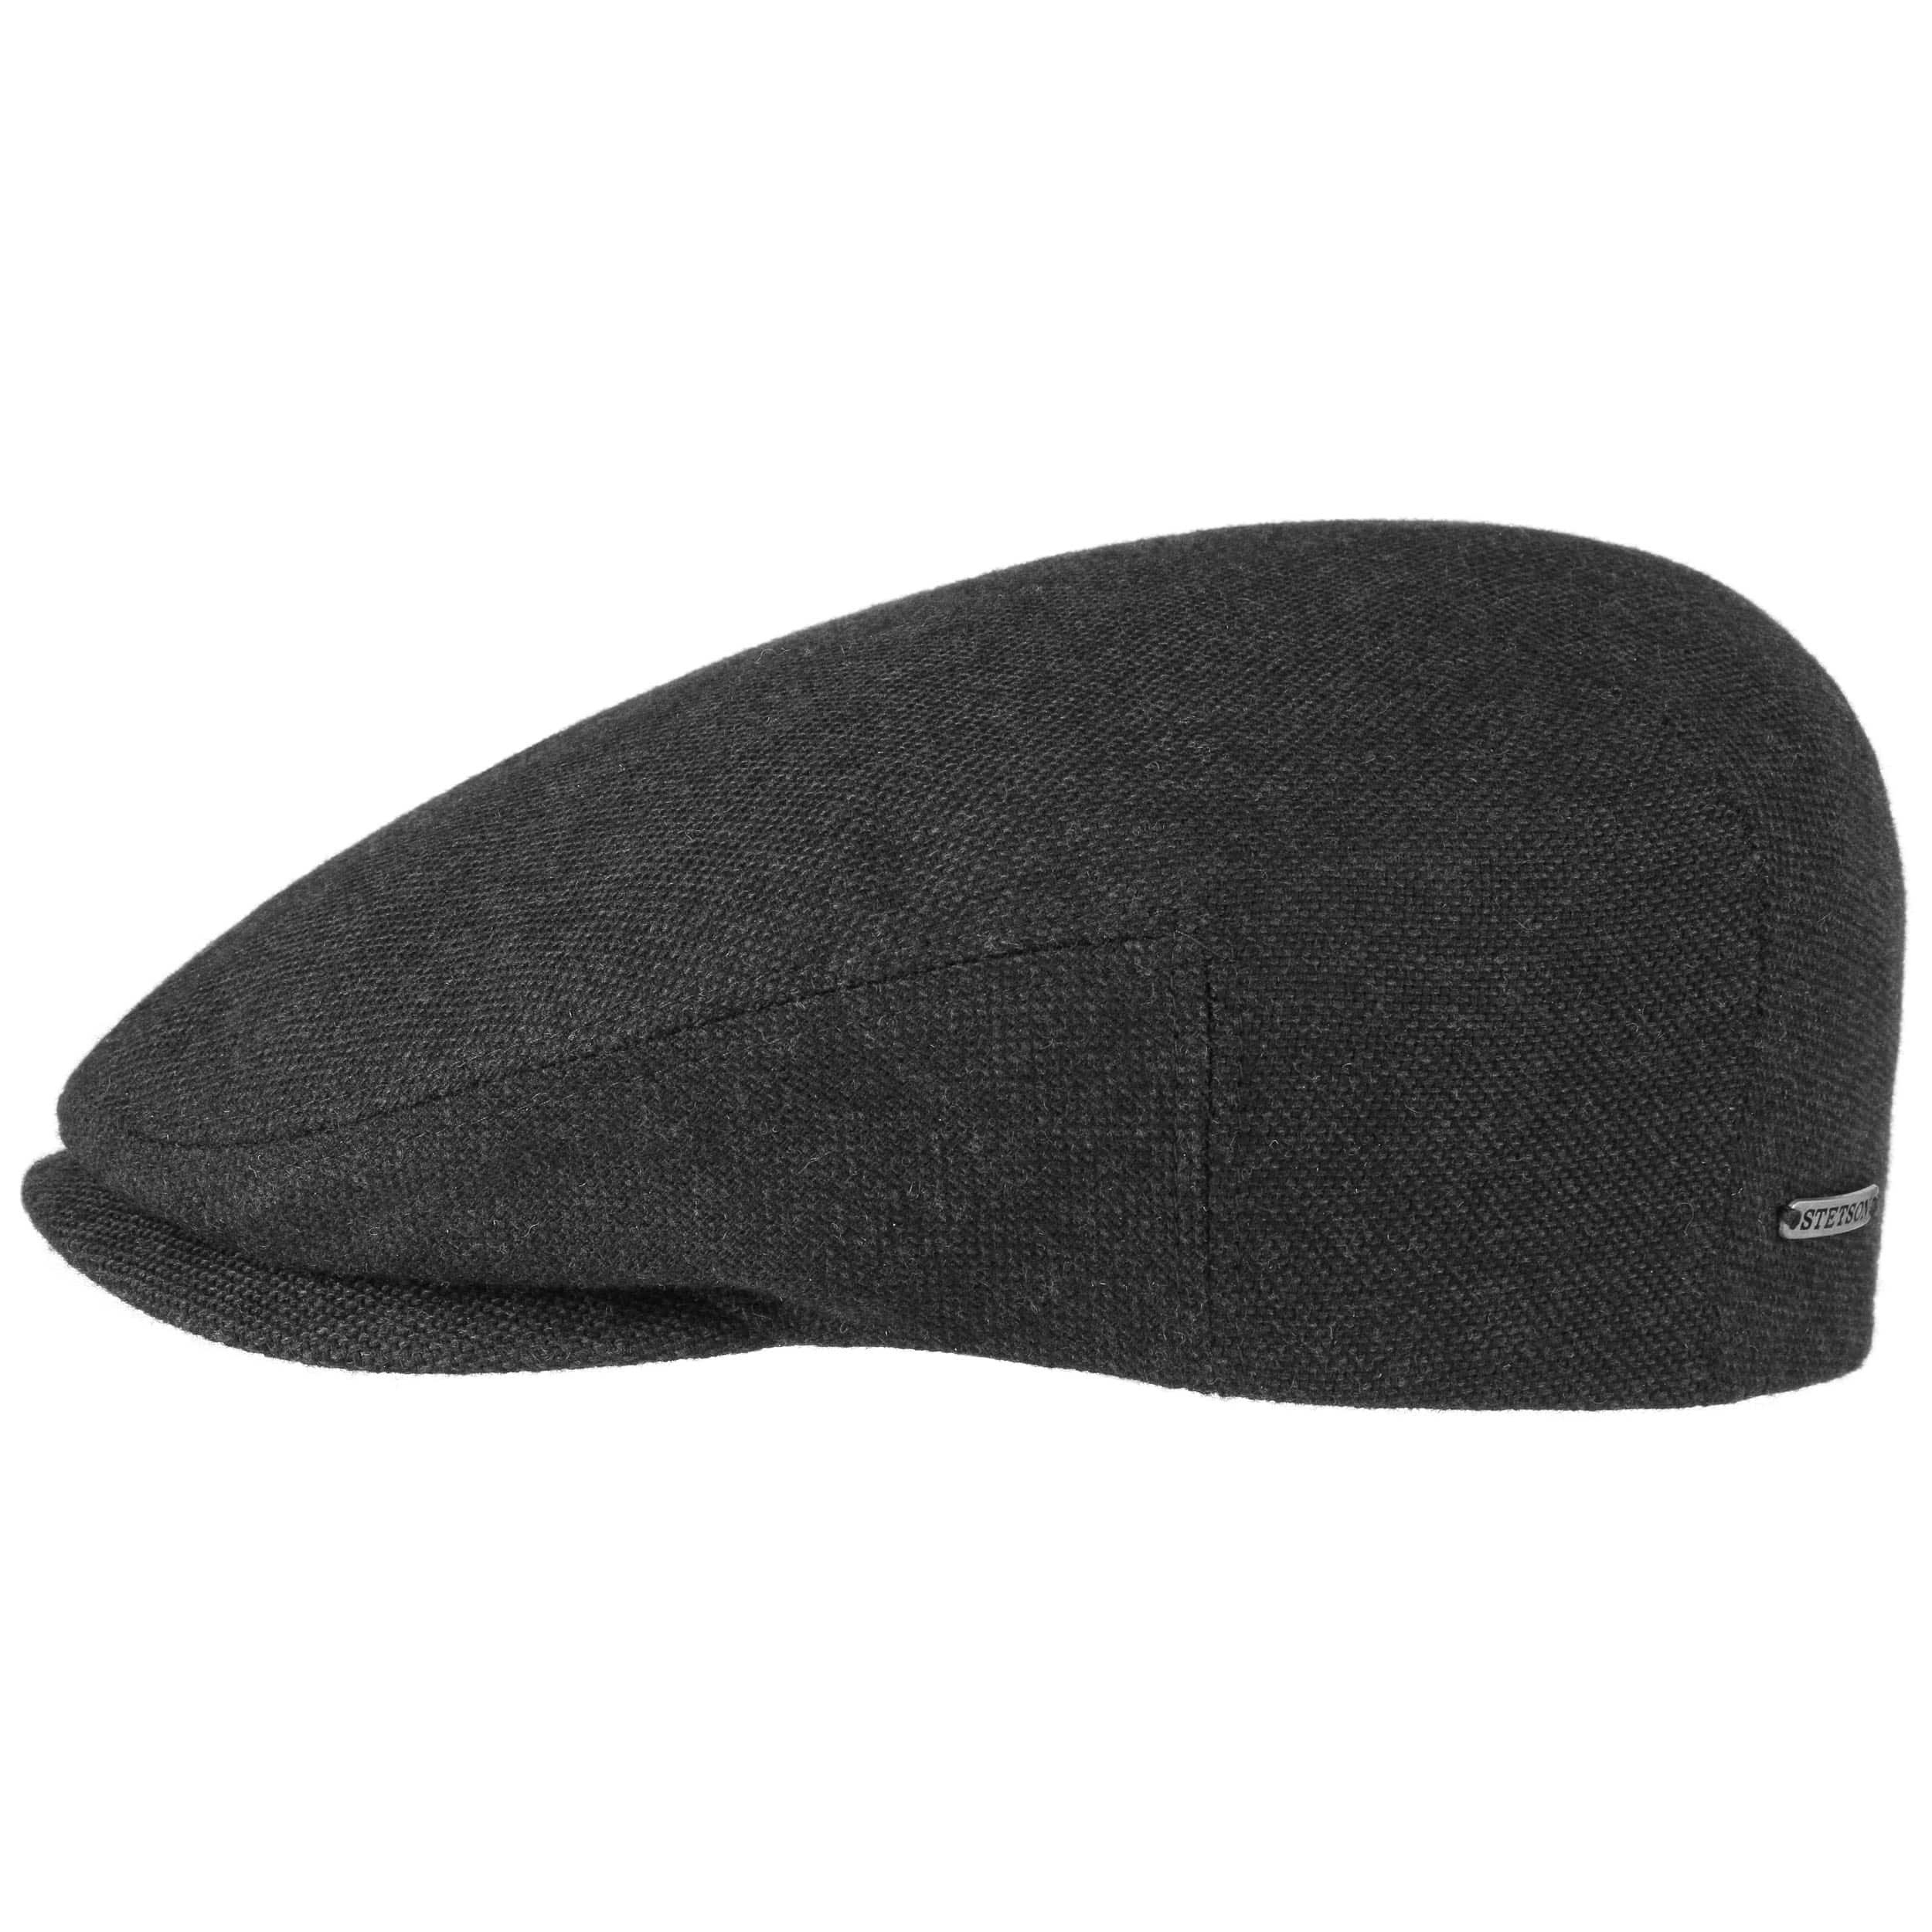 Stetson: Chapeau Stetson, casquette, beret, chapeau homme et femme